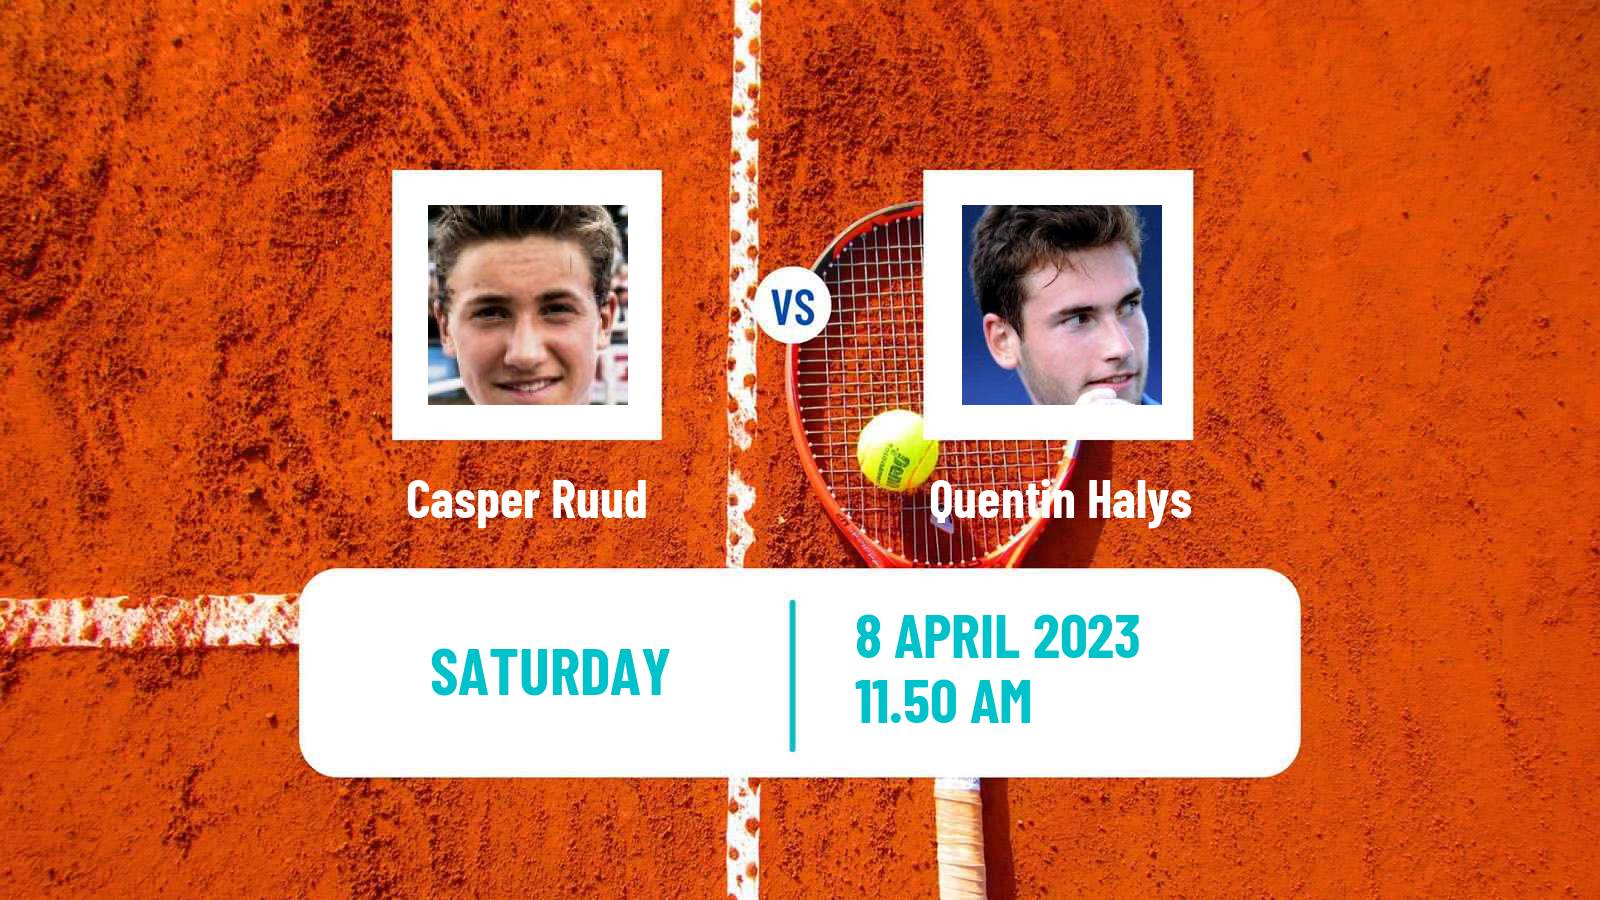 Tennis ATP Estoril Casper Ruud - Quentin Halys